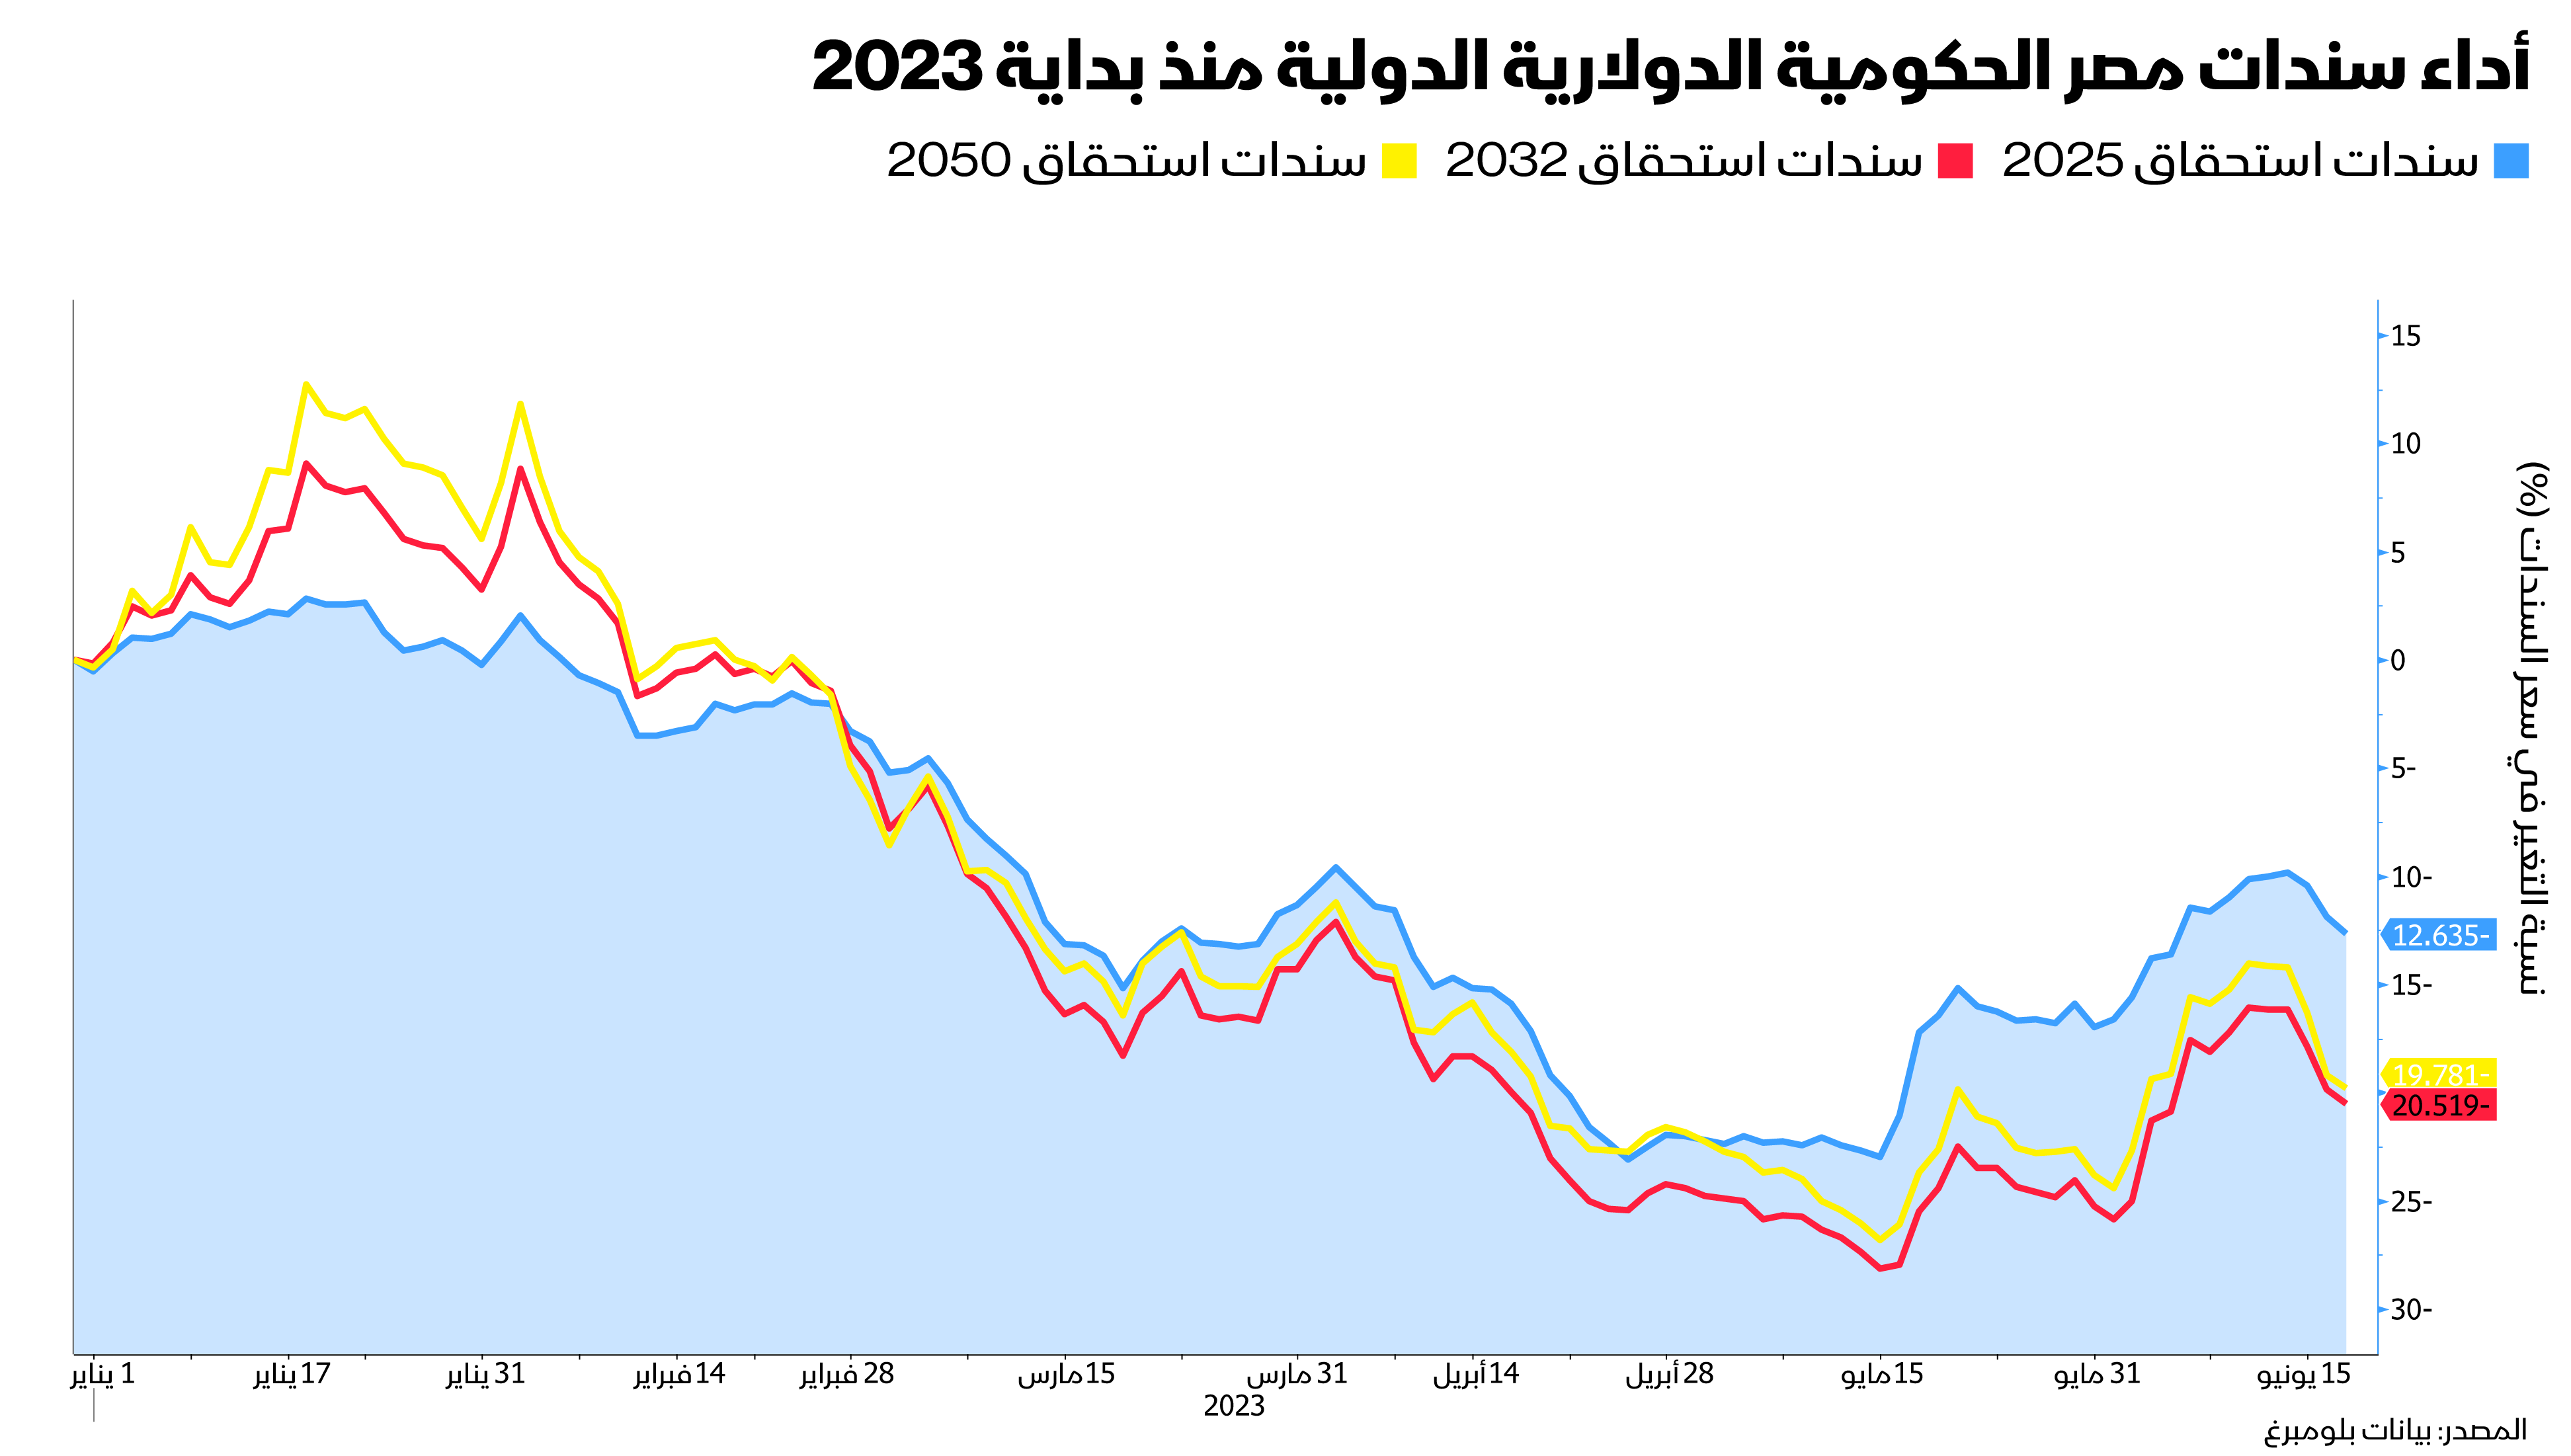 أداء سندات مصر الدولارية الدولية منذ بداية 2023 حتى 19 يونيو